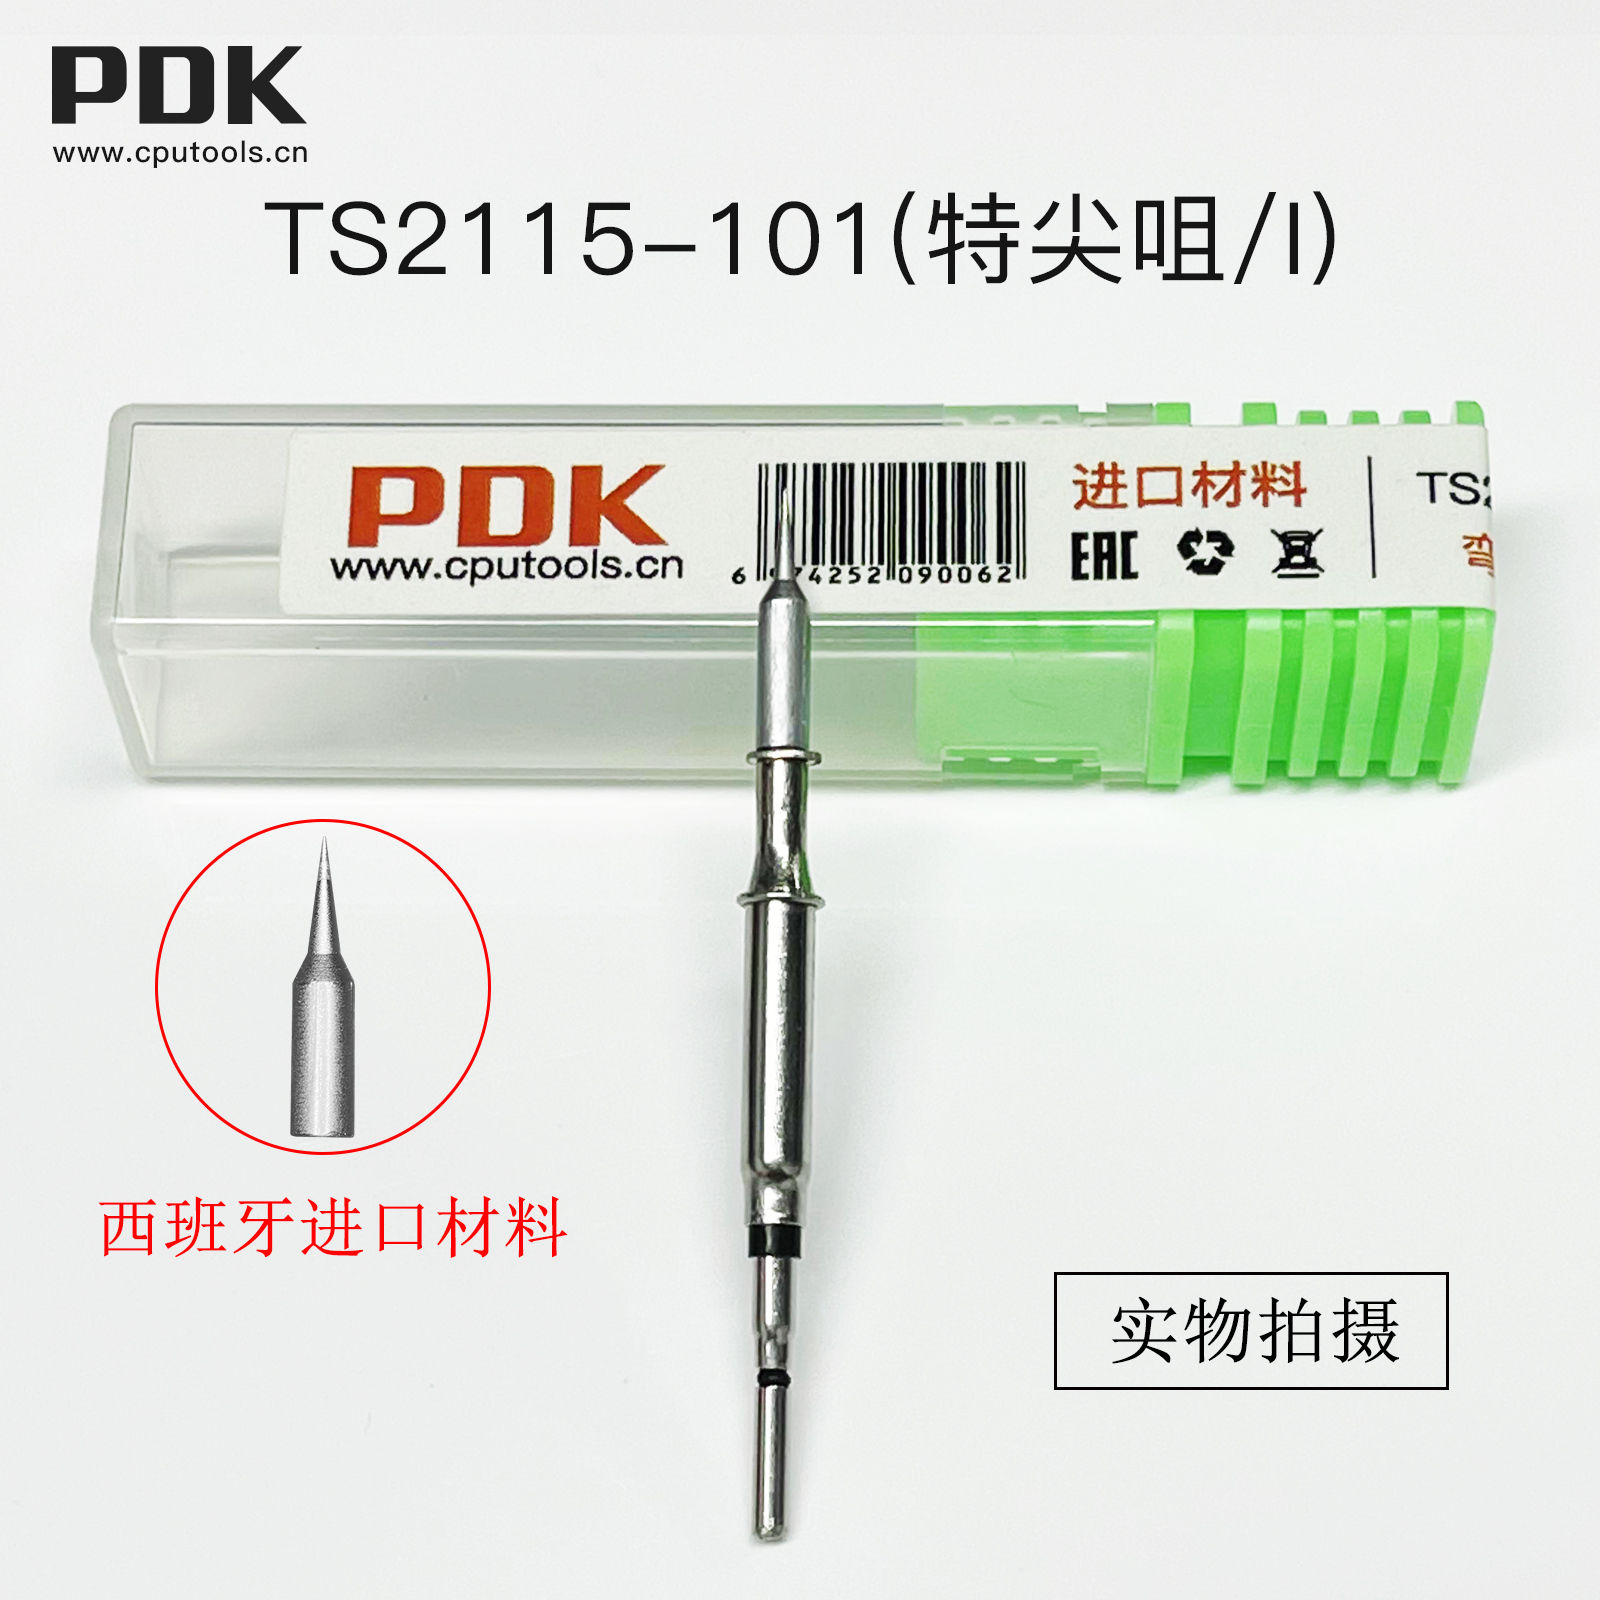 PDK TS2115进口材料烙铁头(图4)